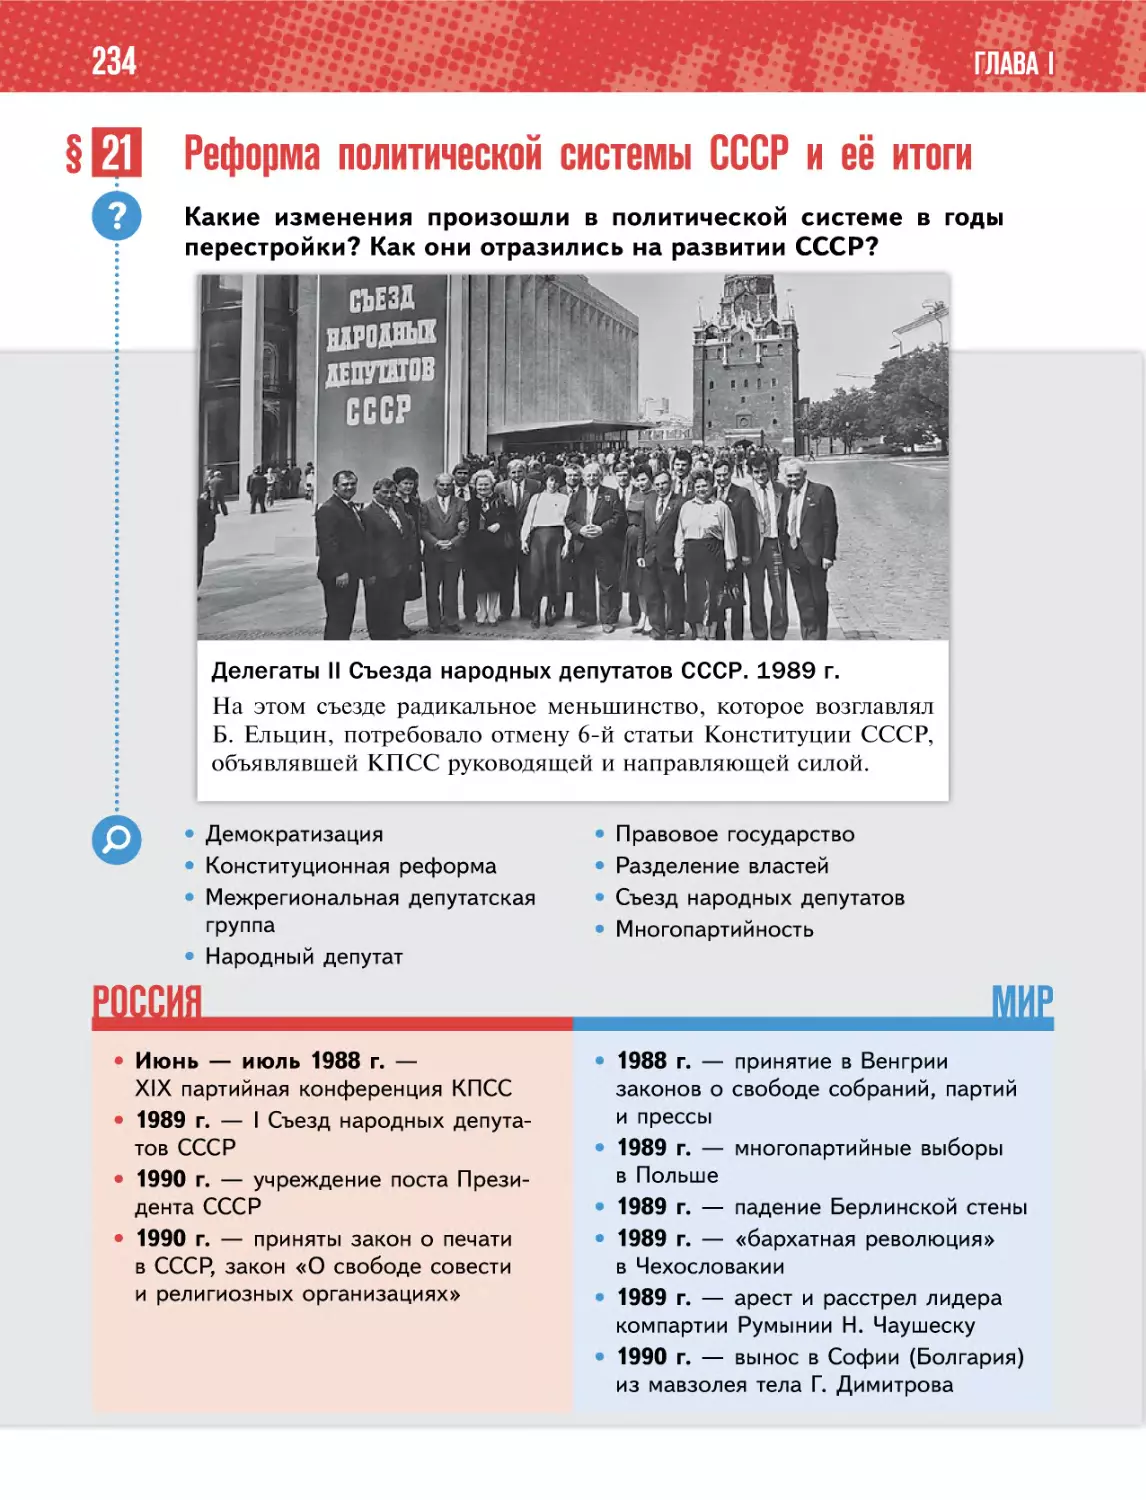 § 21 Реформа политической системы СССР и её итоги